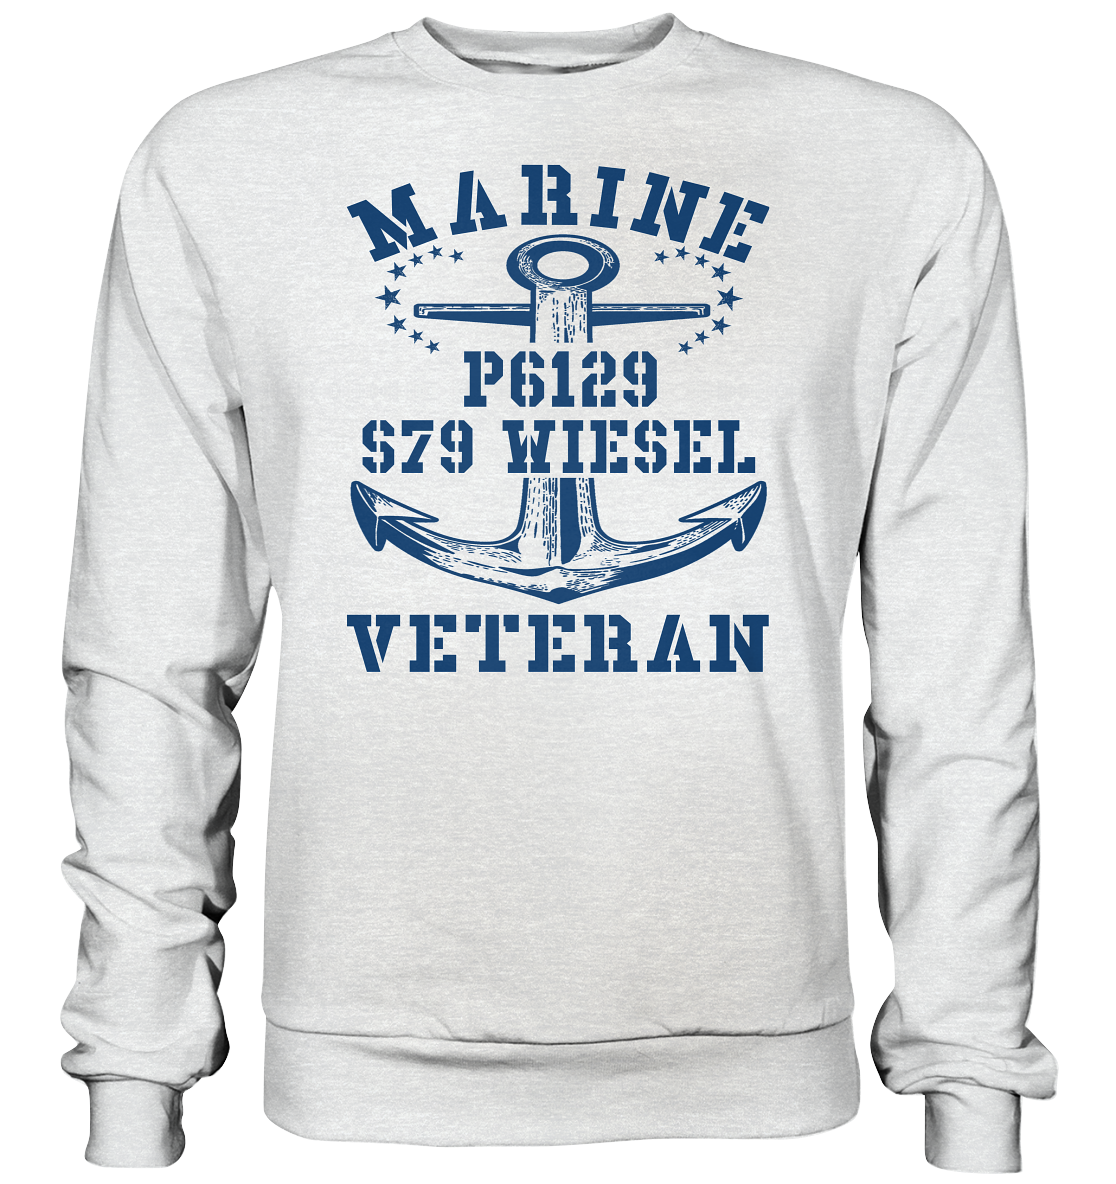 FK-Schnellboot P6129 WIESEL Marine Veteran - Premium Sweatshirt